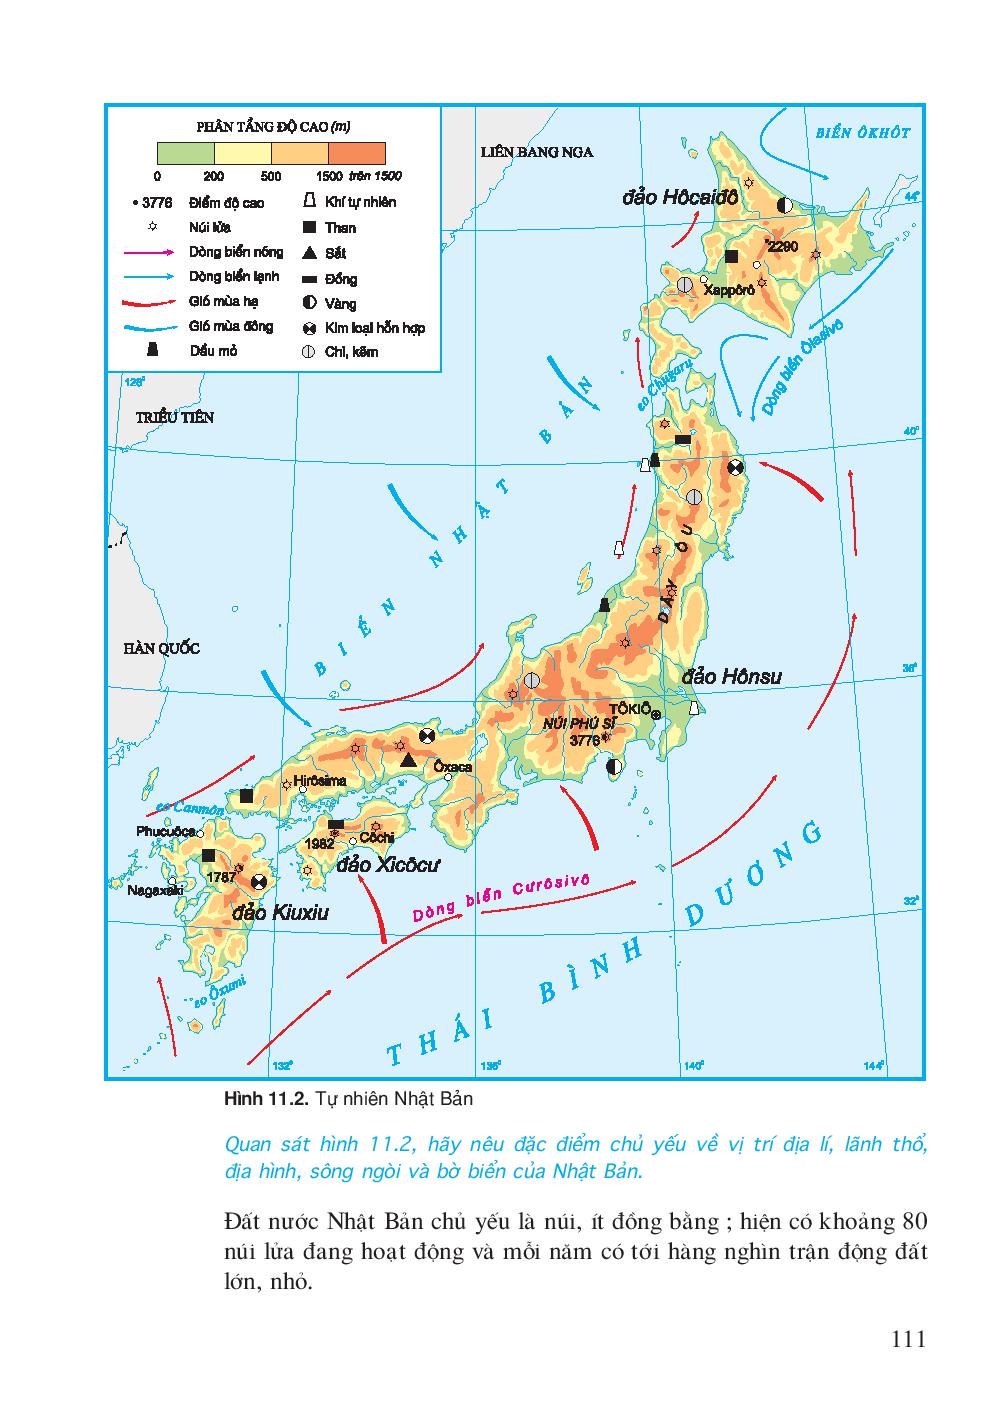 Pupi - Học về địa lý và bản đồ tự nhiên Nhật Bản: ???? Pupi là một trong những phương tiện học tập hiệu quả cho các bạn trẻ yêu thích địa lý và bản đồ tự nhiên Nhật Bản. Với những nội dung đa dạng và hình ảnh sinh động, Pupi mang đến cho bạn những kiến thức bổ ích và thú vị về đất nước Nhật Bản.